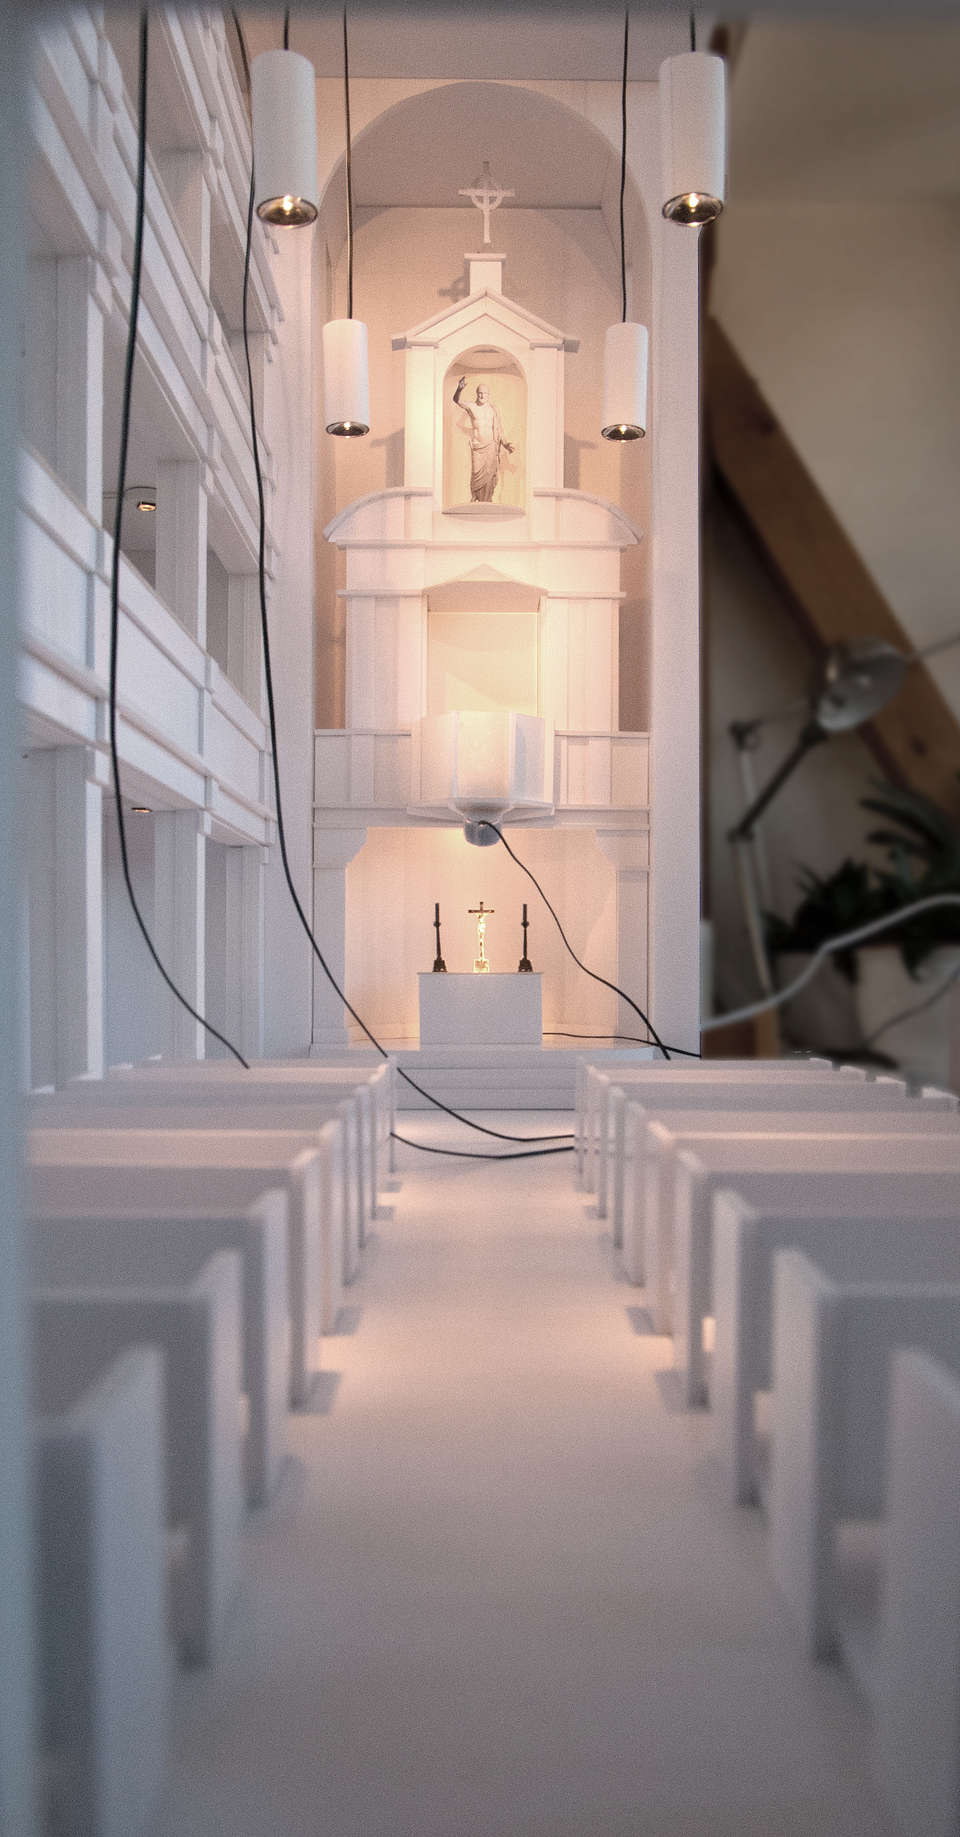 Das lichttechnische Modell steht in der Kirche und lädt zum Ausprobieren ein., Bild: Torsten Müller